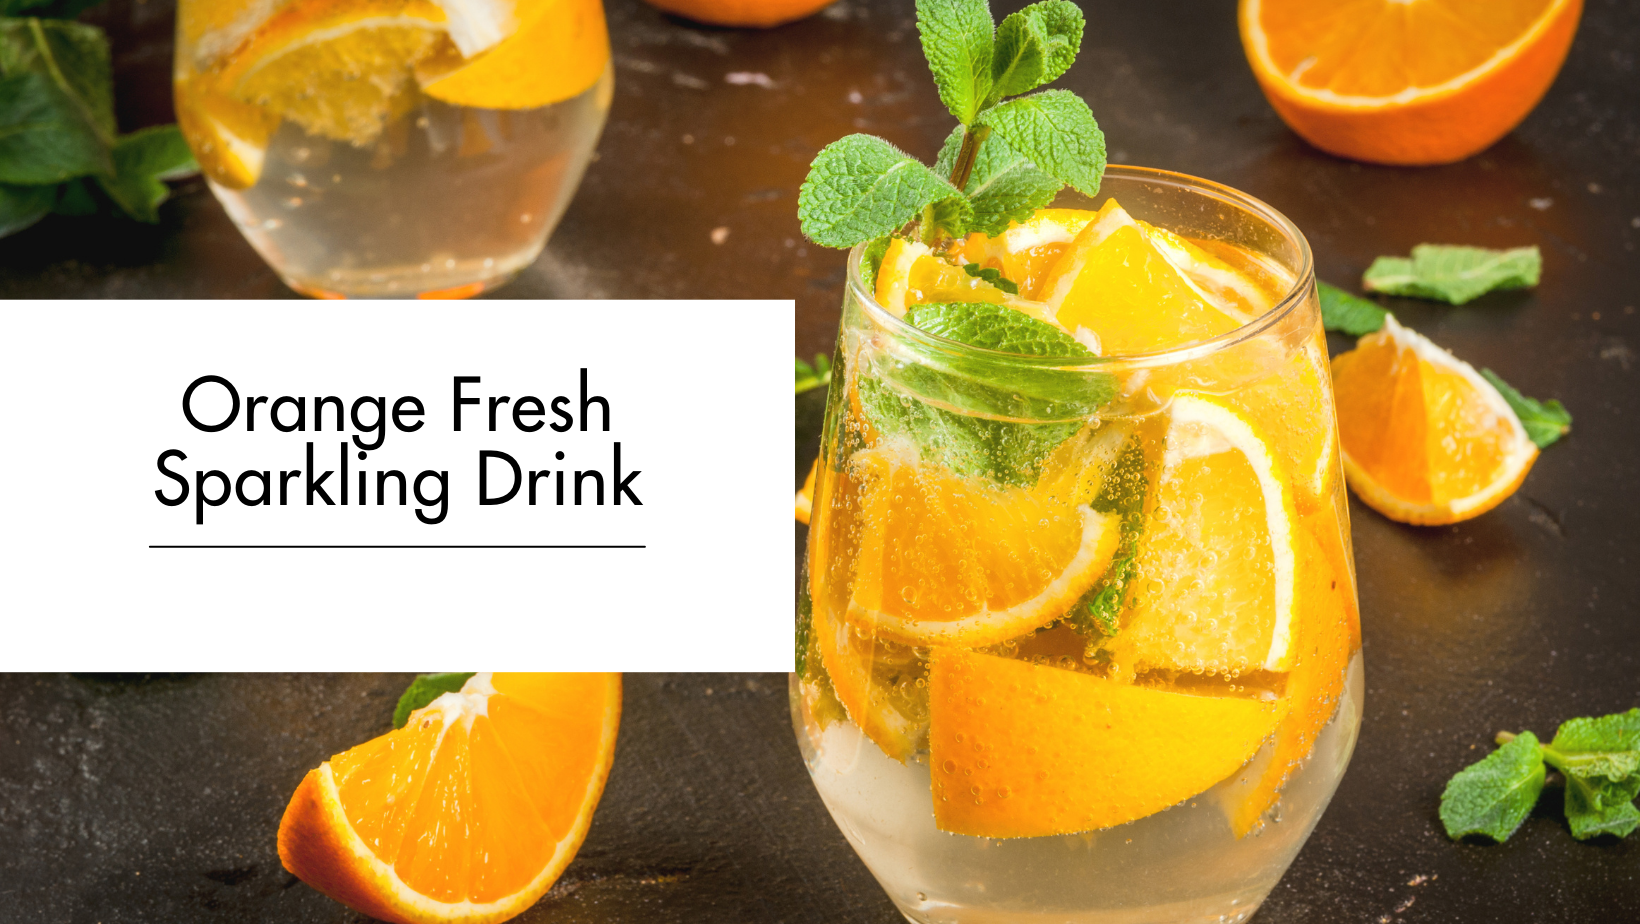 Orange Fresh Sparkling Drink